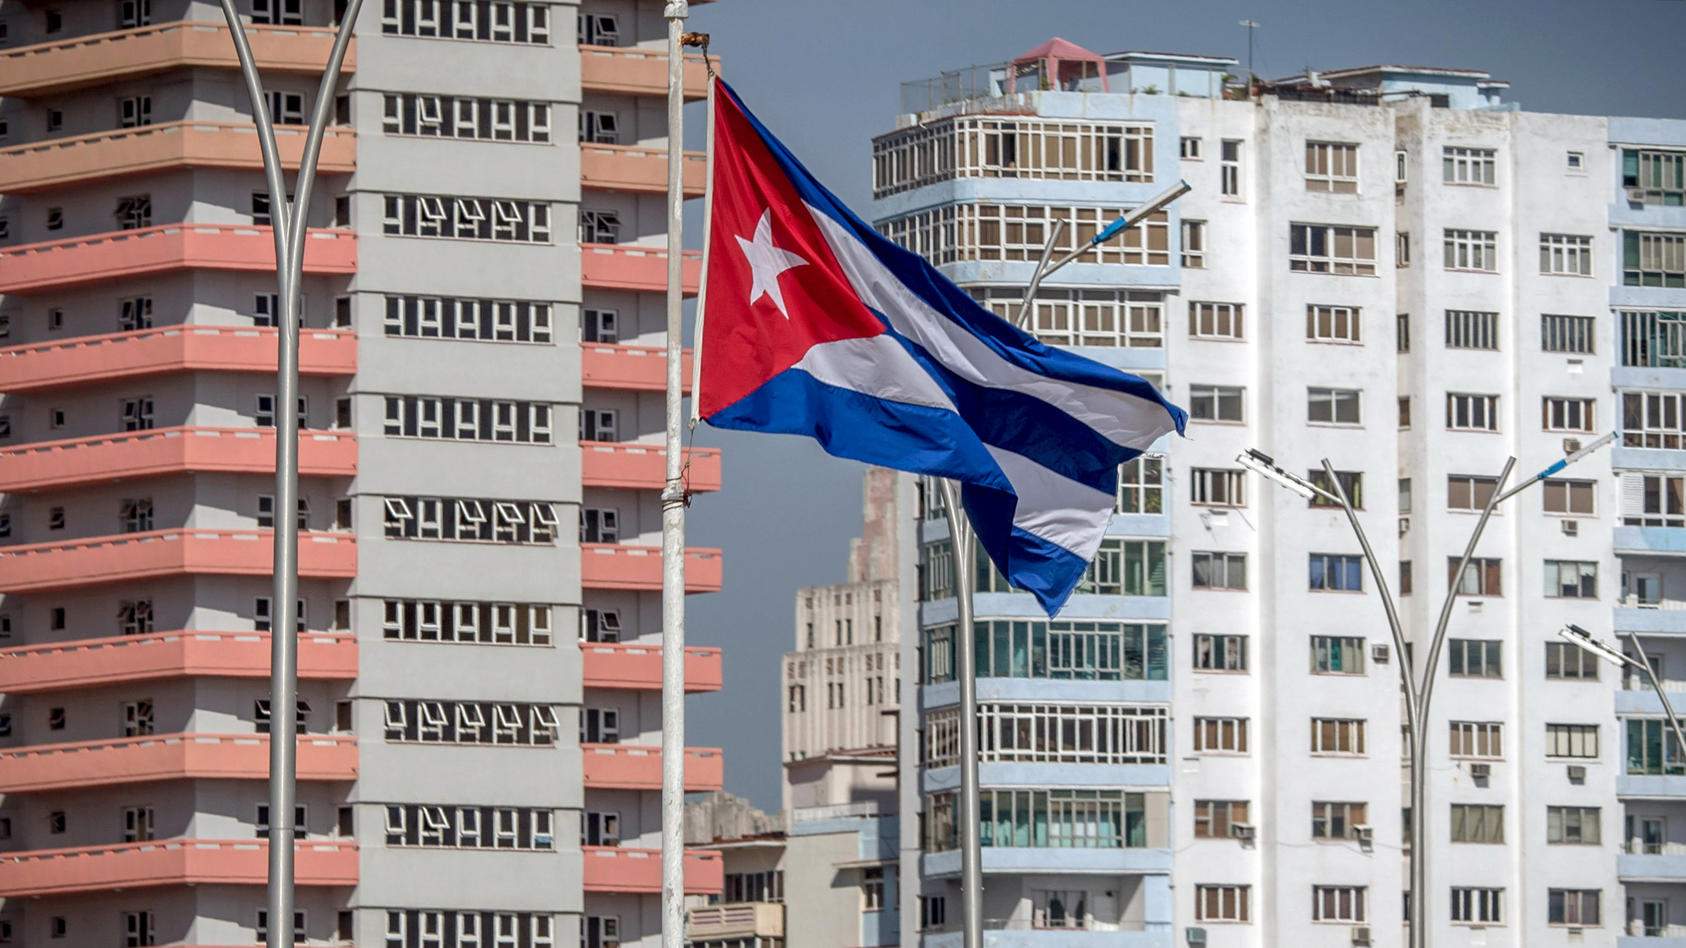 ARCHIV - 17.07.2015, Kuba, Havanna: Die Flagge Kubas weht vor Wohnhäusern. (zu dpa «Kuba ohne die Castros: Neuer Präsident soll Kurs halten» vom 17.04.2018) Foto: Michael Kappeler/dpa +++ dpa-Bildfunk +++